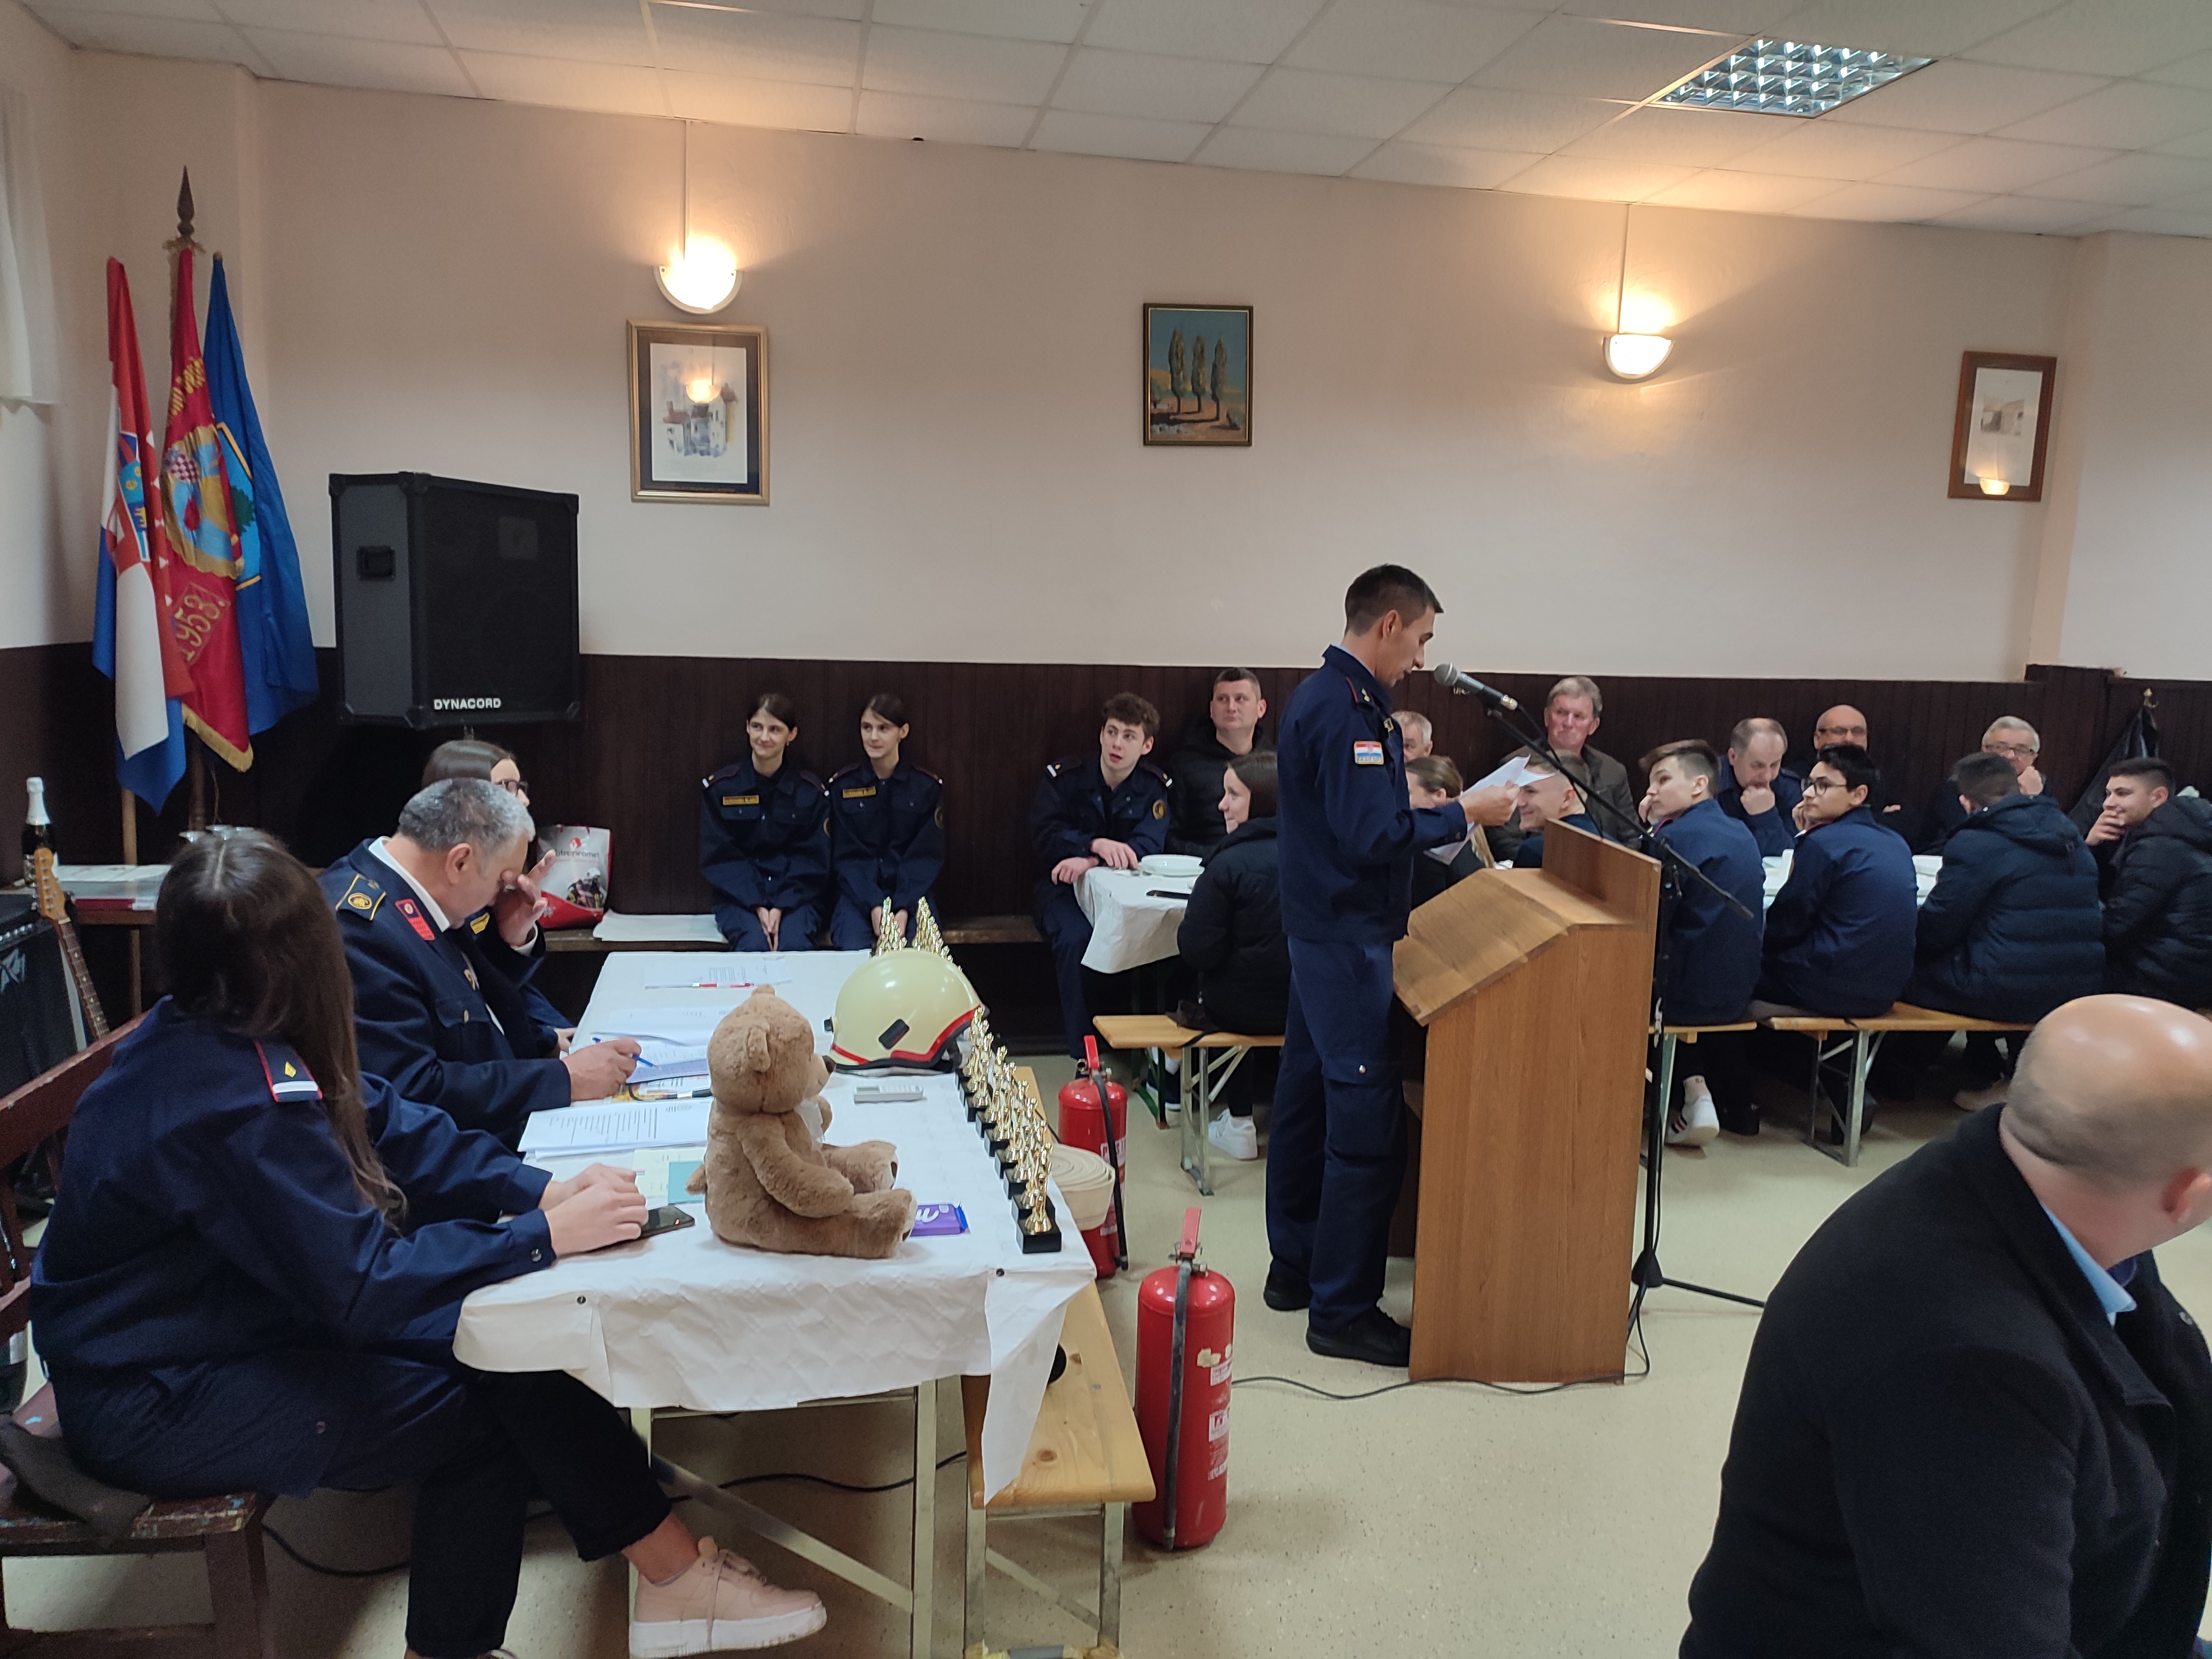 Požega.eu | Vatrogasci Zakorenja uz jubilej potpisali povelju o suradnji sa DVD Trema Budilovo u križevačkom kraju